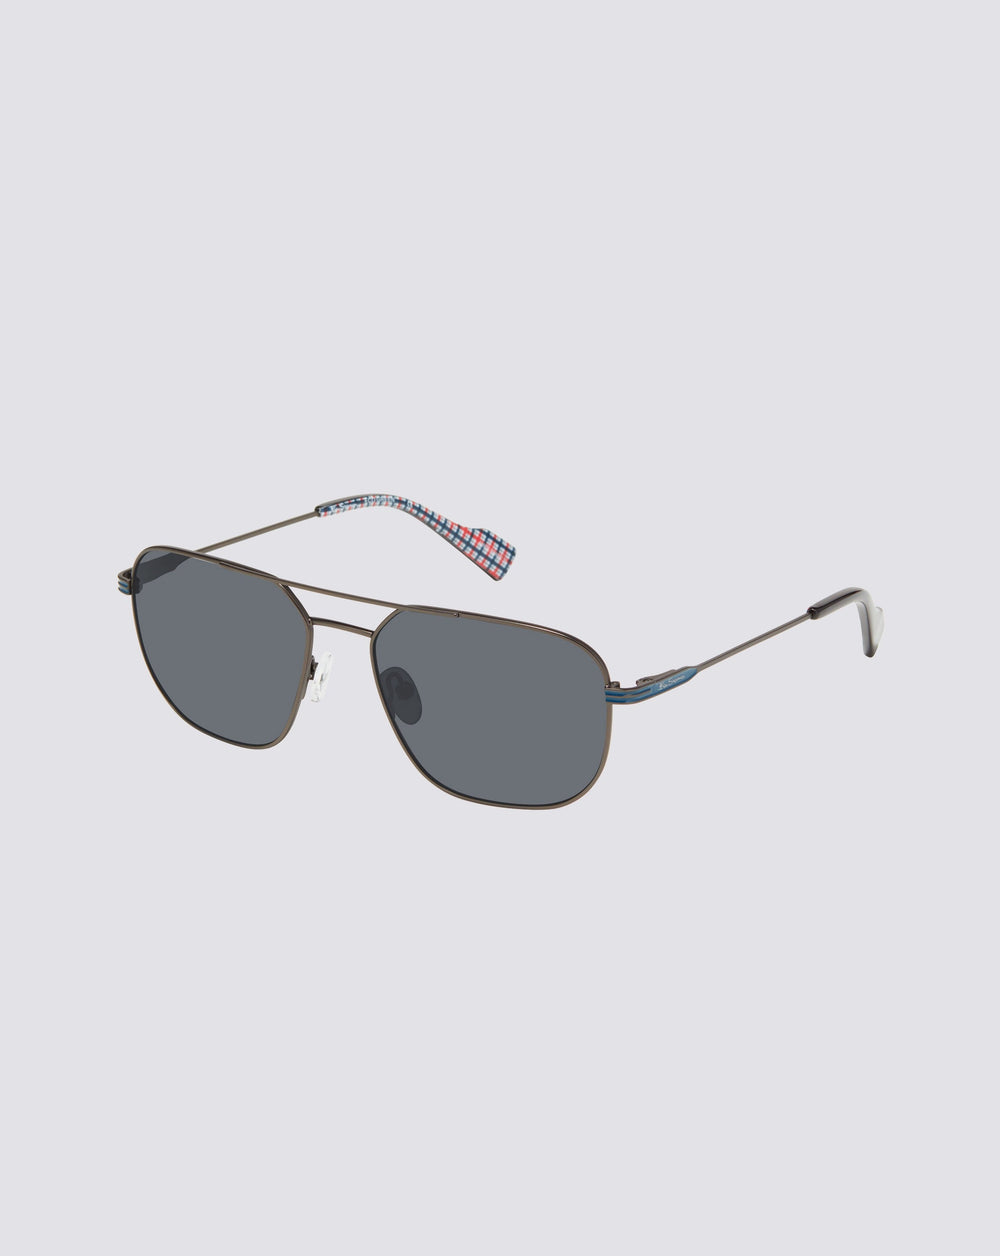 St. Johns Polarized Square Sunglasses